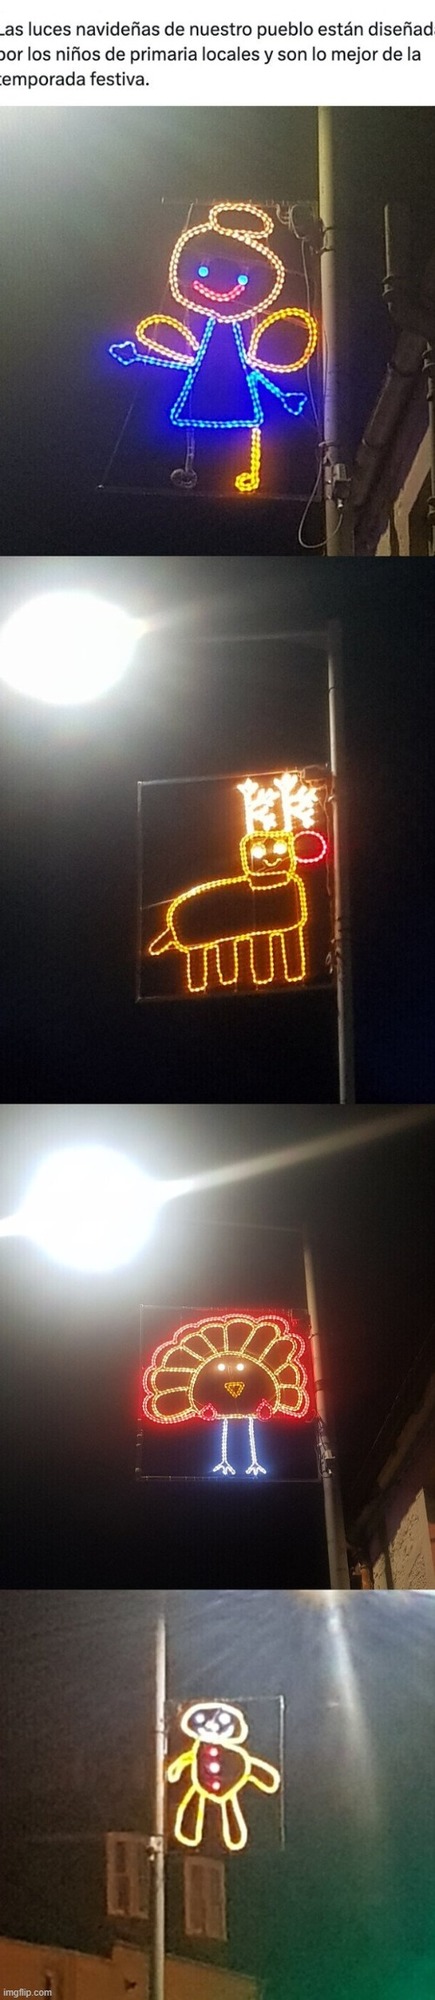 En este pueblo las luces de navida están diseñadas por niños - meme